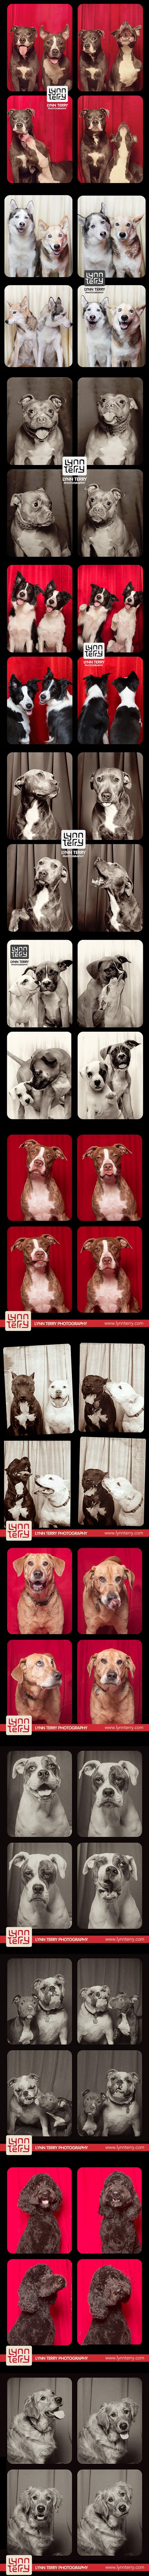 Le photographe Lynn Terry a fait une série de photos mettant en scène des chiens et cadrant de telle sorte qu'on ait l'impression qu'elles ont été faites dans un Photomaton.